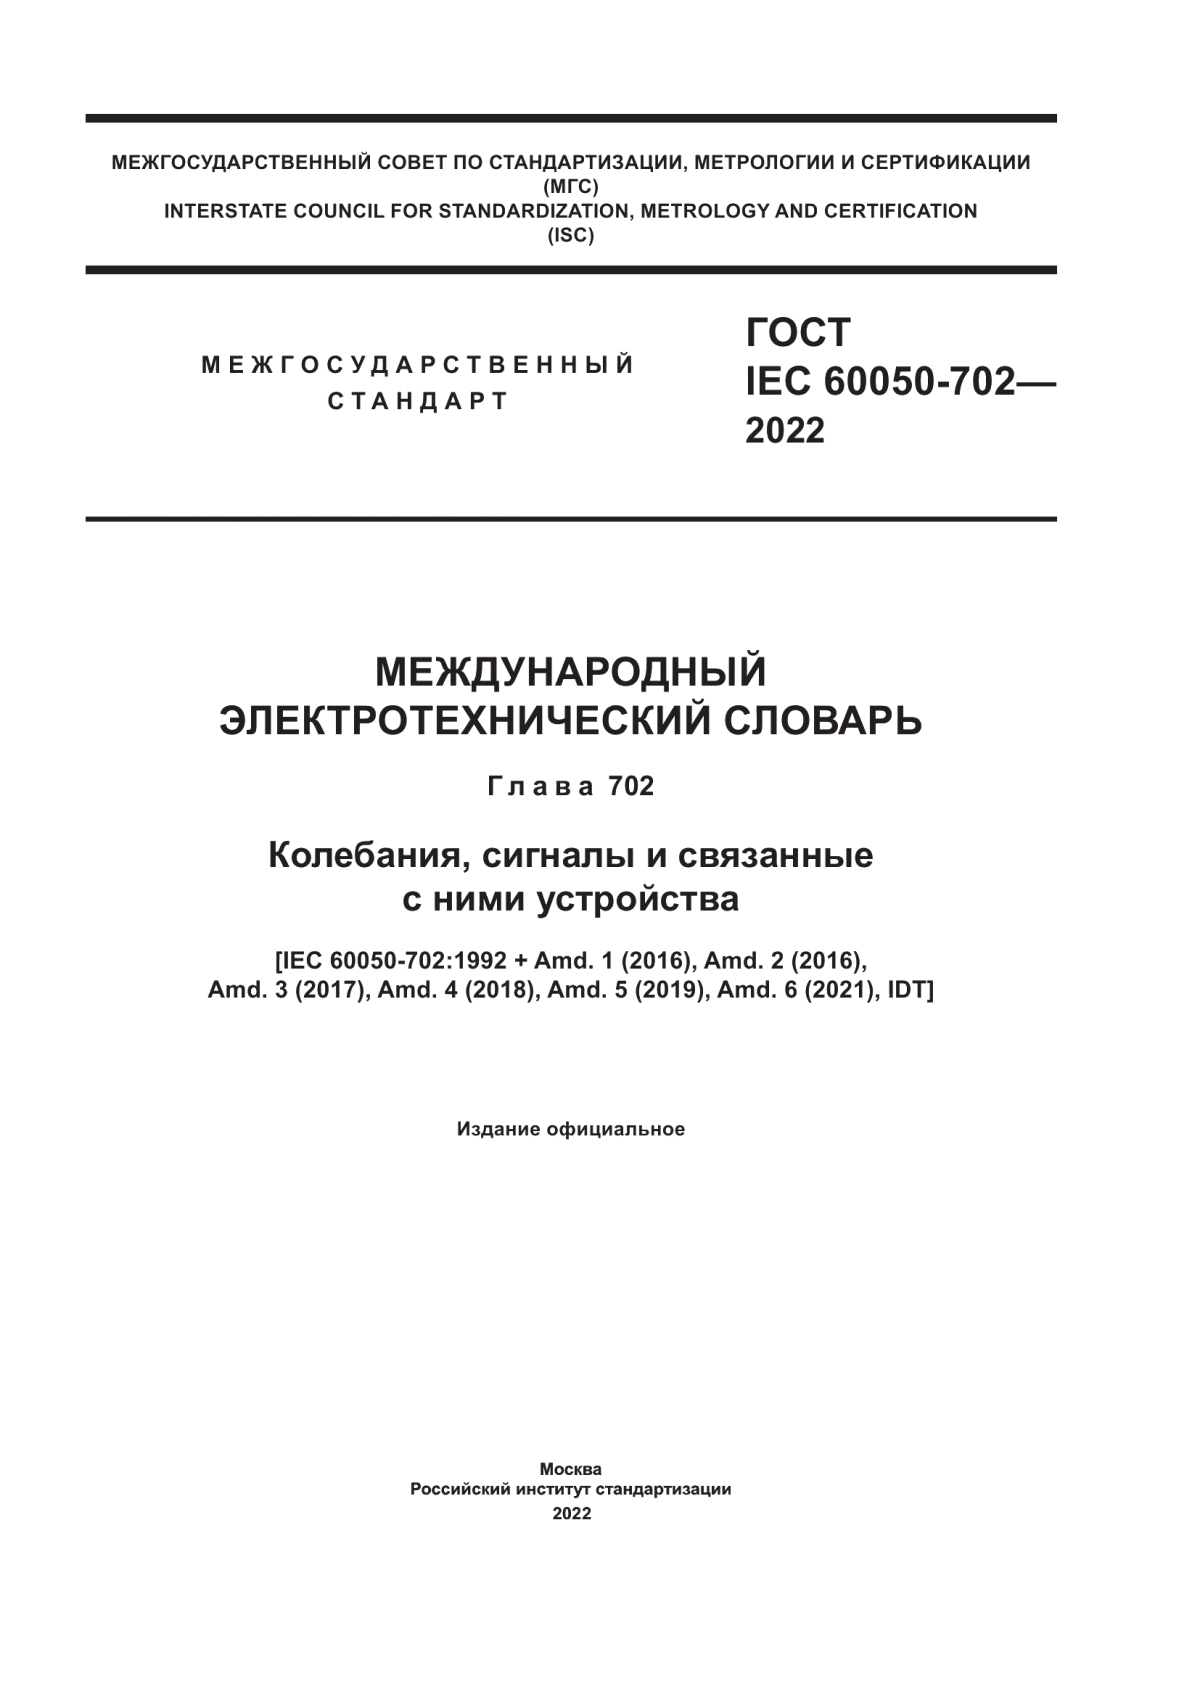 ГОСТ IEC 60050-702-2022 Международный электротехнический словарь. Глава 702. Колебания, сигналы и связанные с ними устройства